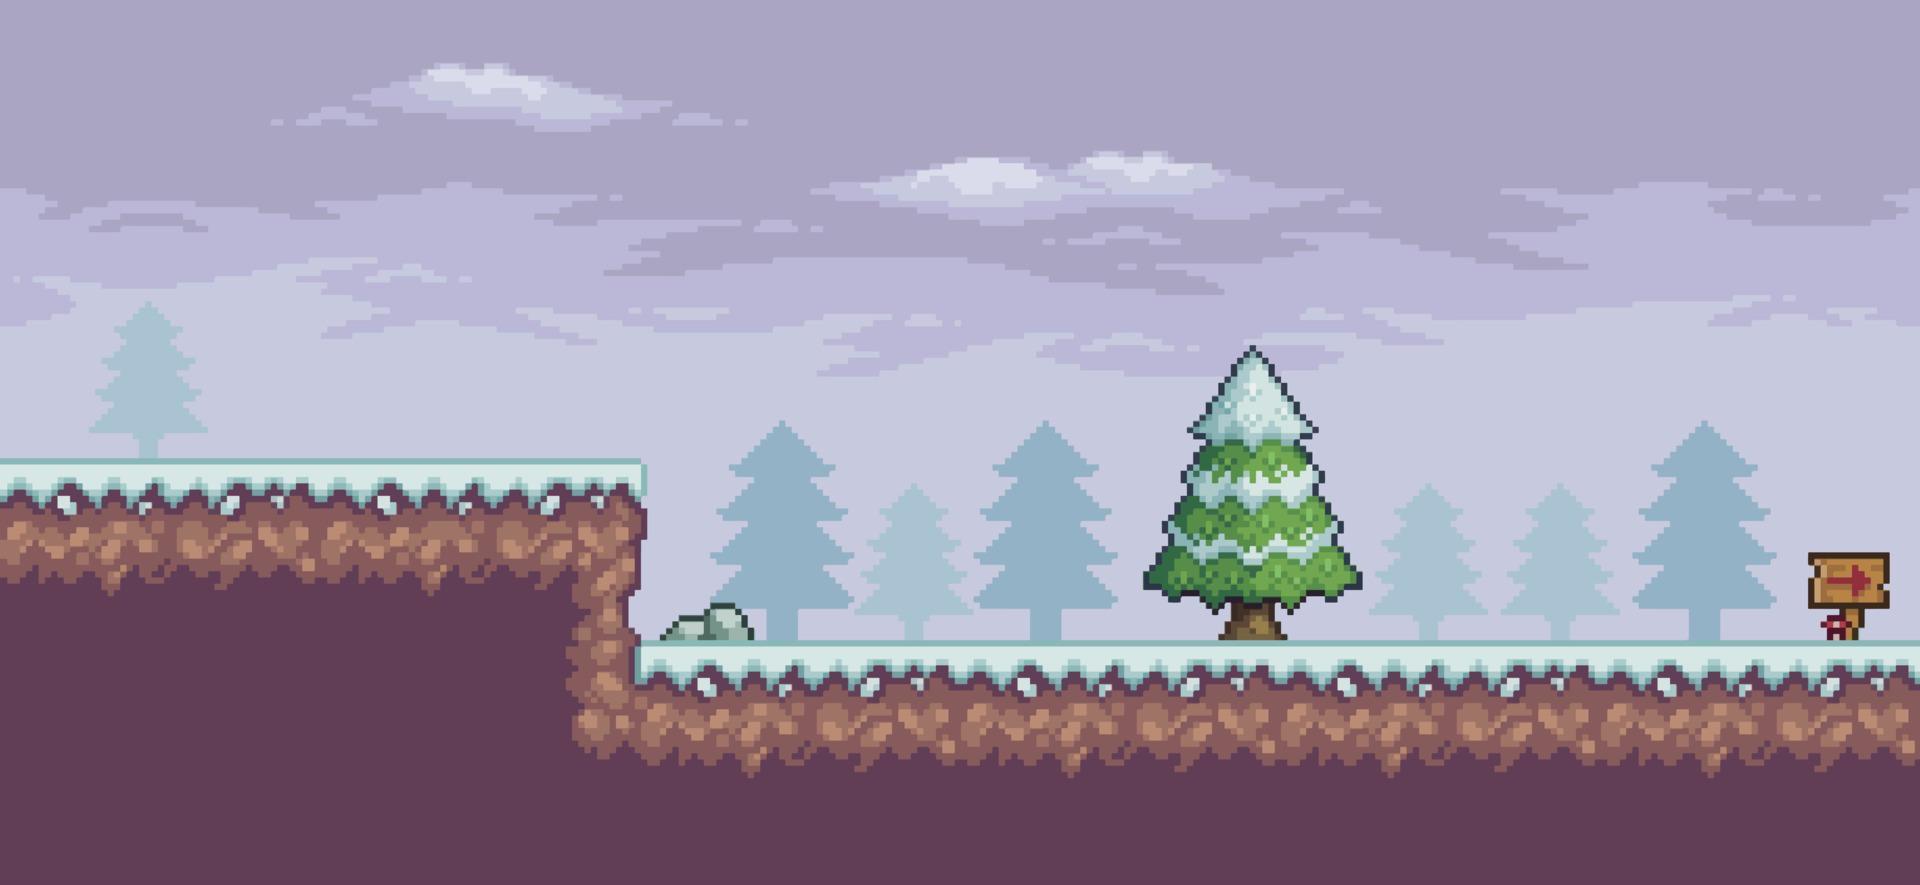 pixel art spelscen i snö med tallar, moln, vägledande 8-bitars bakgrund vektor